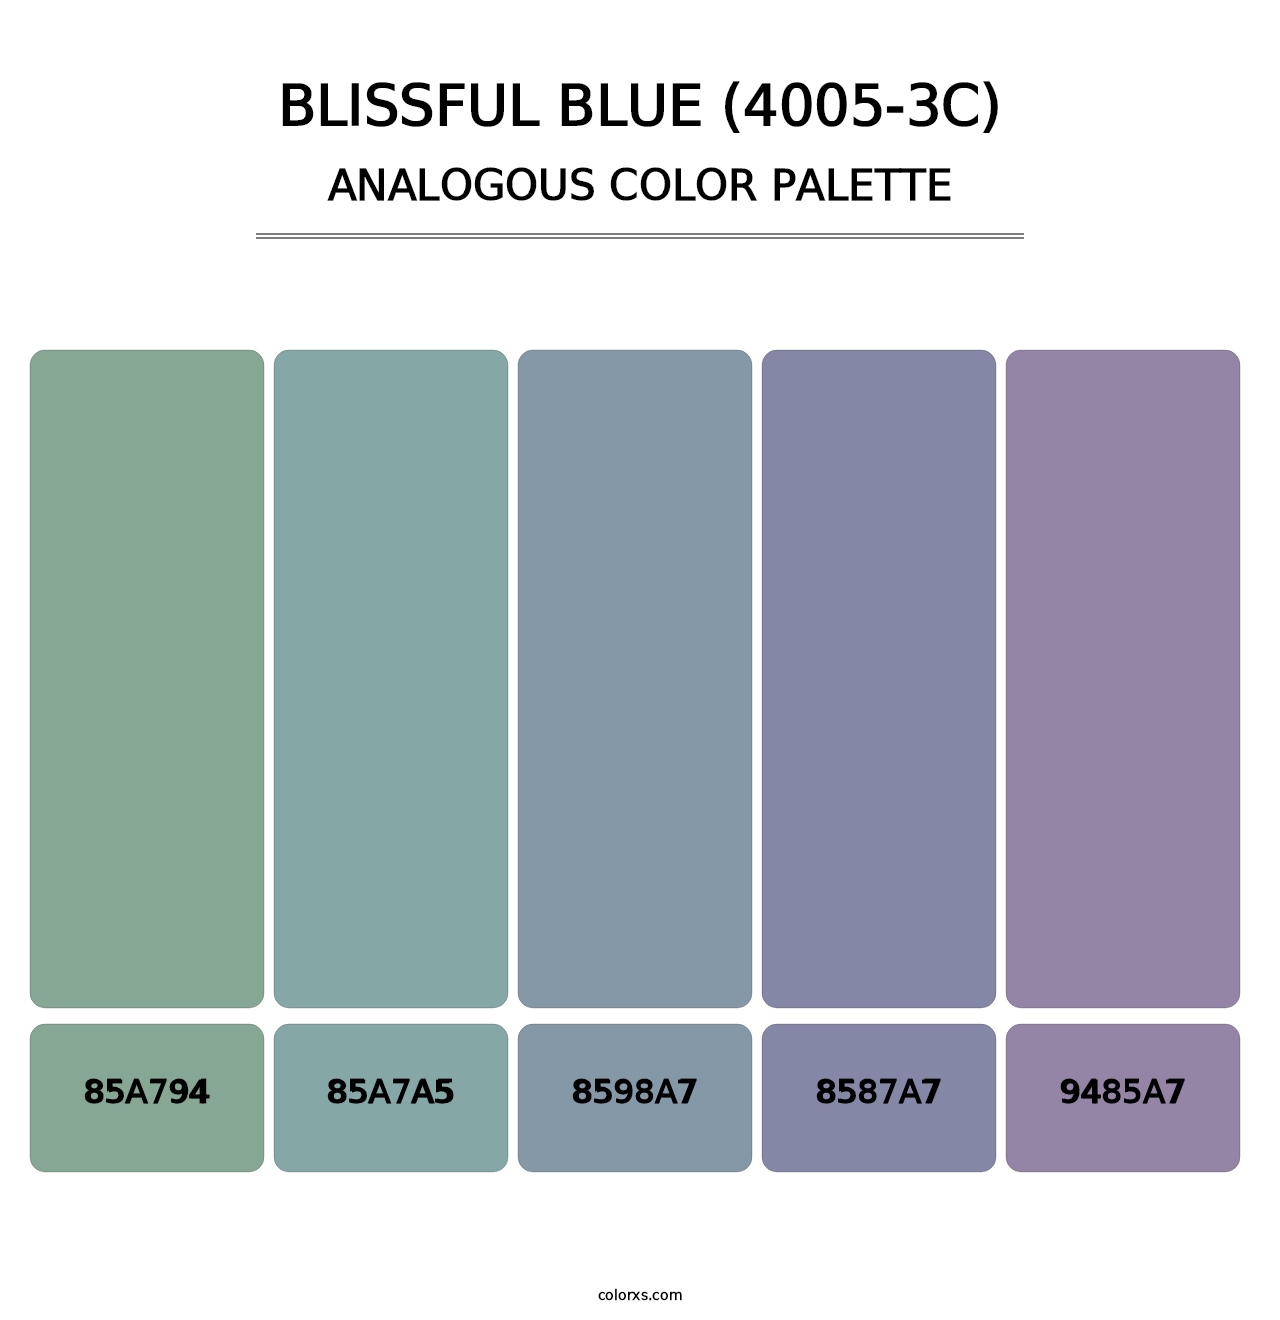 Blissful Blue (4005-3C) - Analogous Color Palette